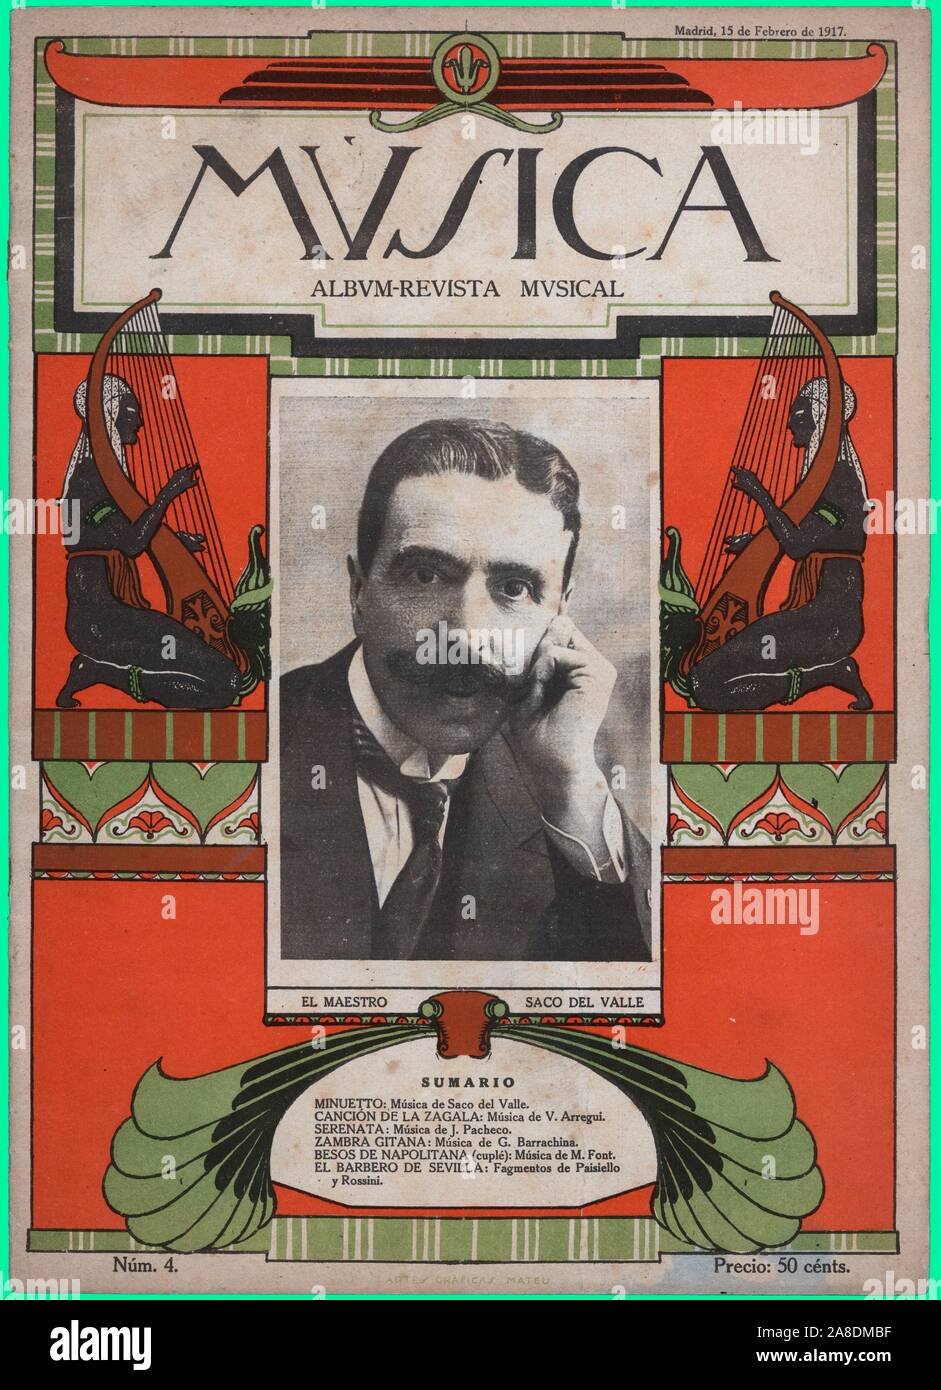 Portada del álbum-revista Música, editada en Madrid, febrero de 1917. Artur Saco del Valle Flores. Stock Photo